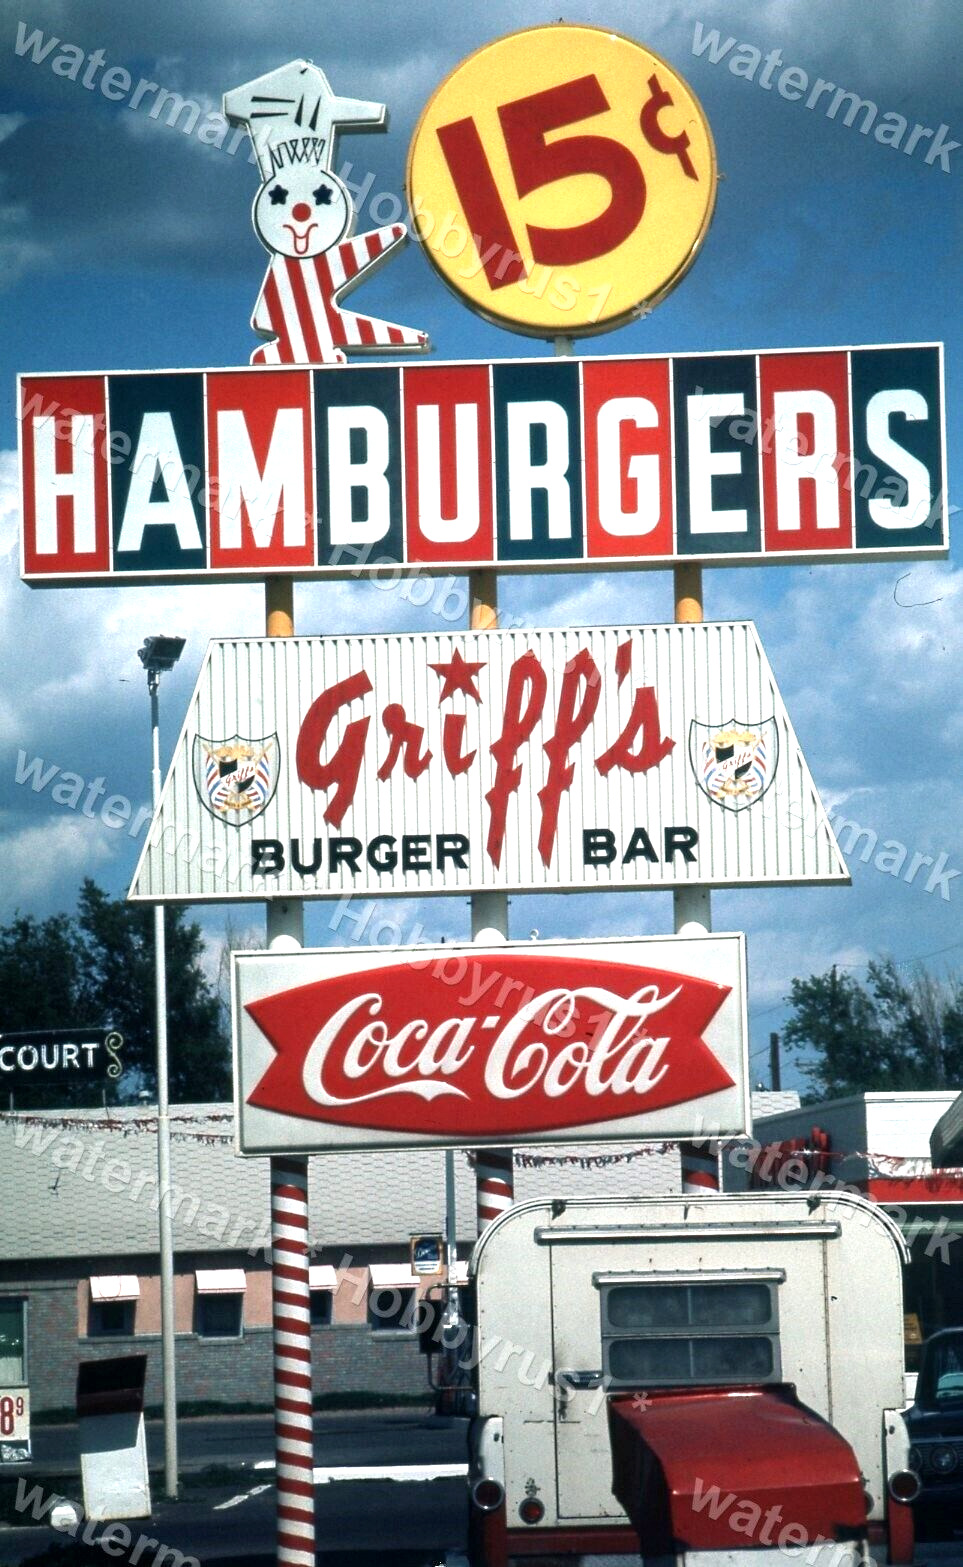 Griff\'s Burger Bar Hamburgers 15cent Coca Cola Ad 1965 Original 35mm Photo Slide